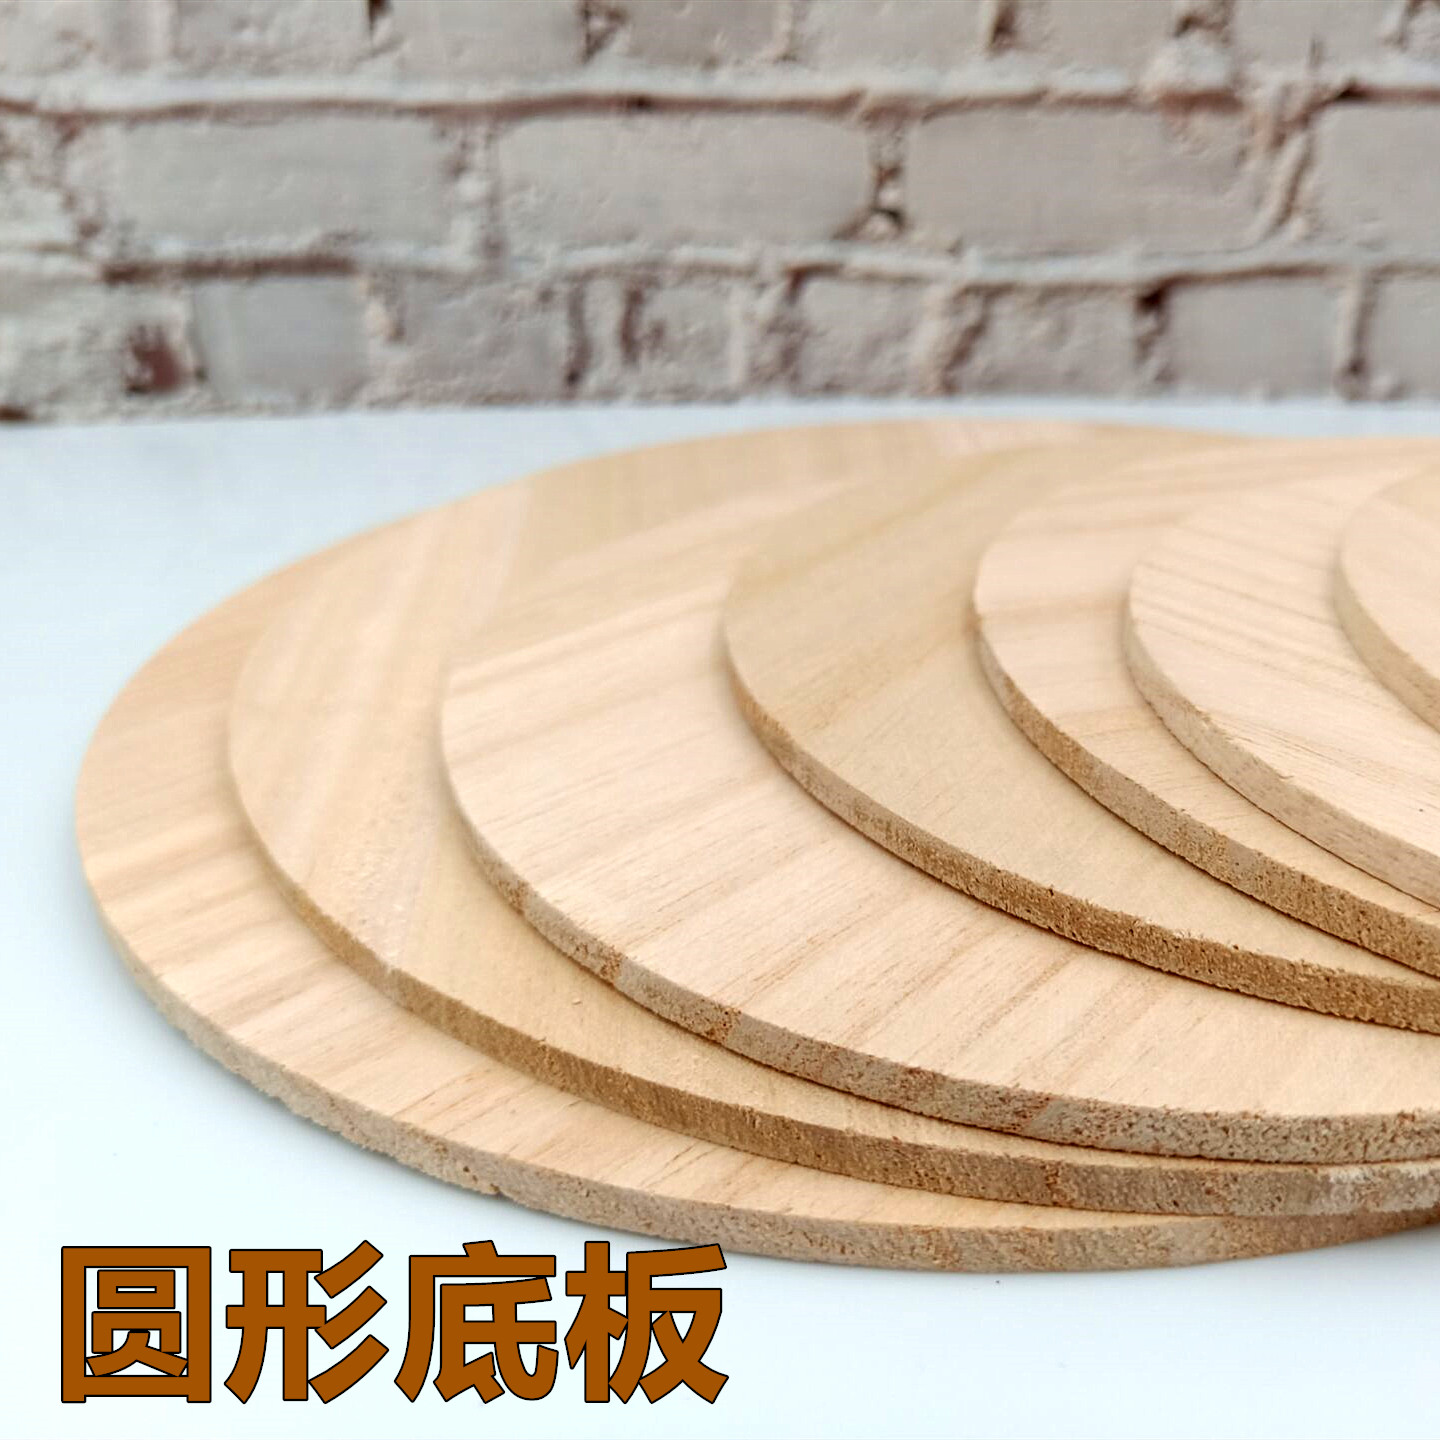 时代 圆形松木底板展示板 情景模型沙盘制作diy材料